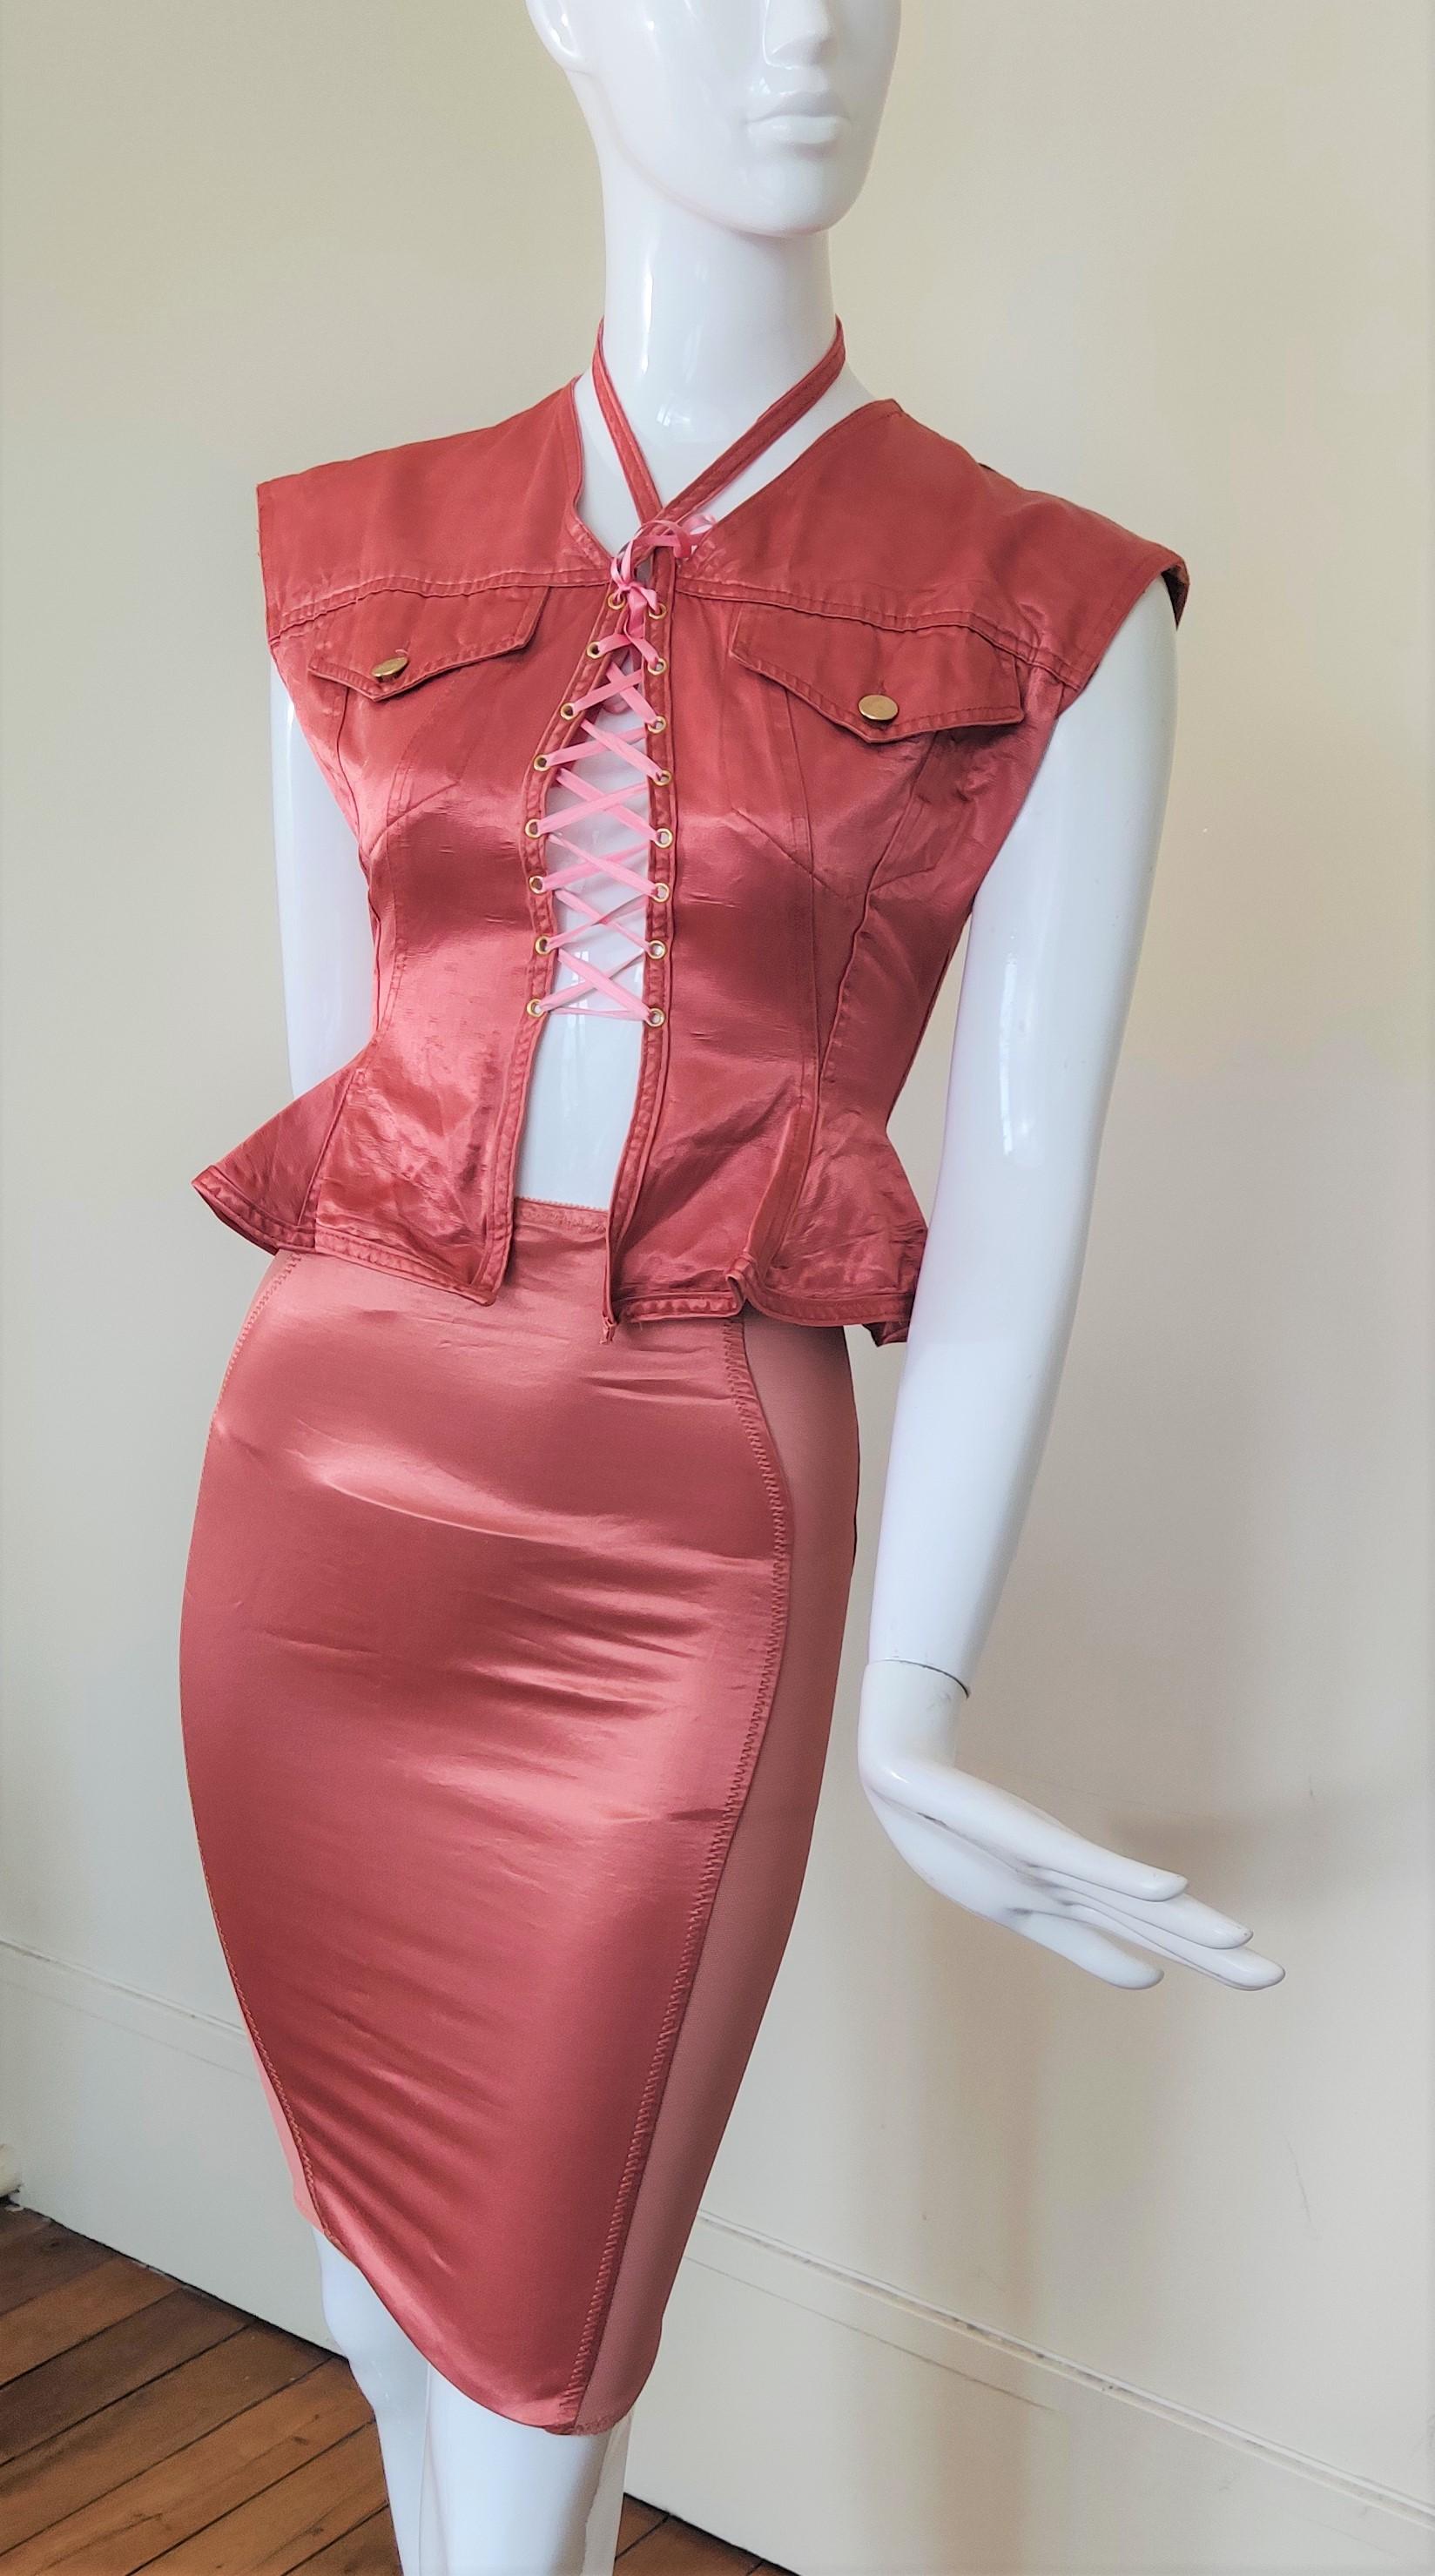 Jean Paul Gaultier Corset Bustier Pink Rose Vintage Lace Bondage Dress For Sale 2